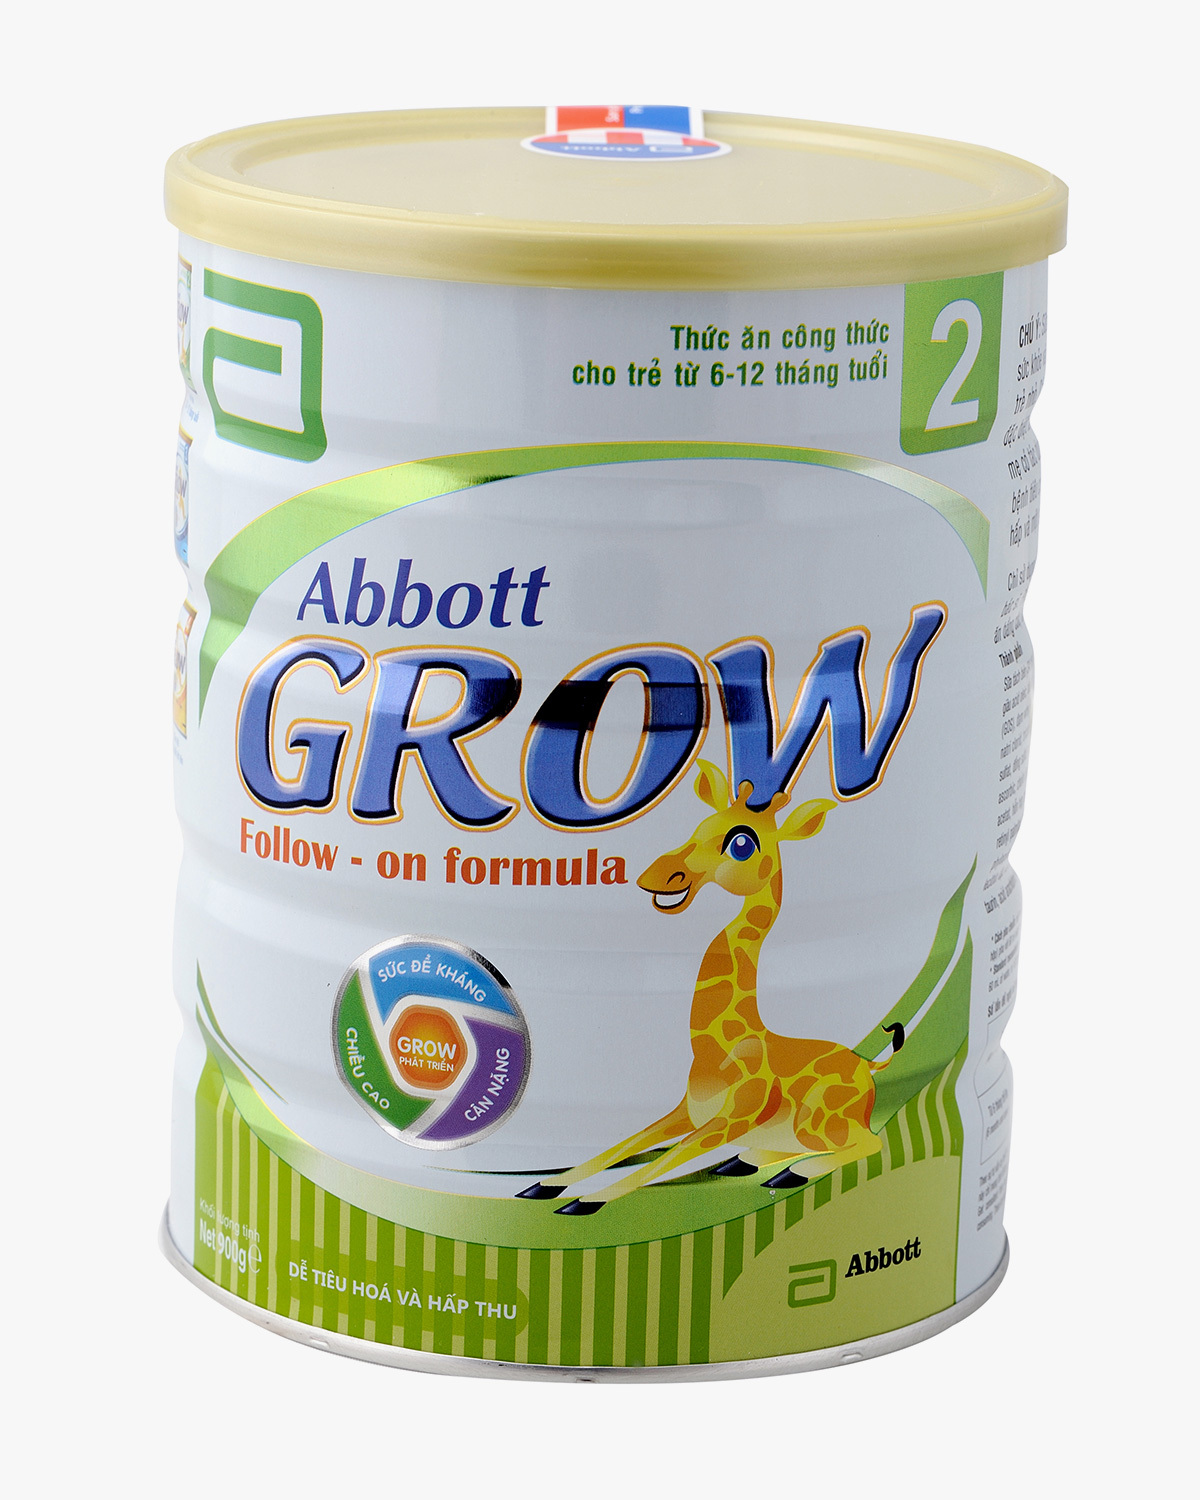  Abbott Grow 2 với công thức dinh dưỡng được thiết kế khoa học cho bé từ 6-12 tháng tuổi